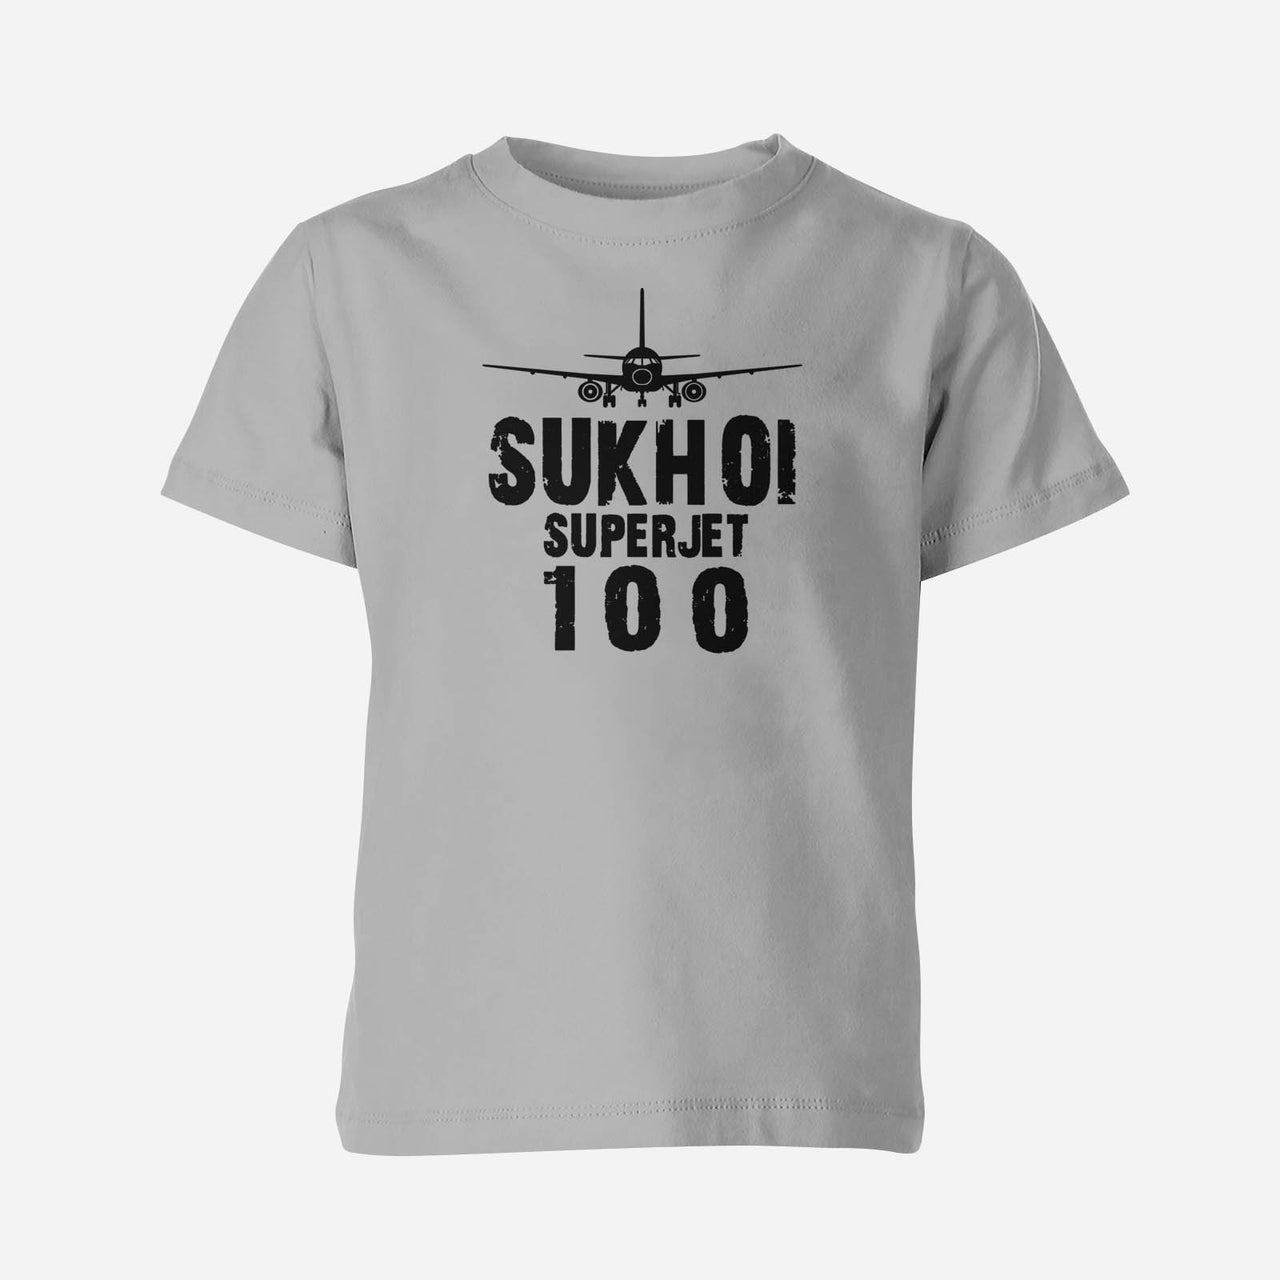 Sukhoi Superjet 100 & Plane Designed Children T-Shirts